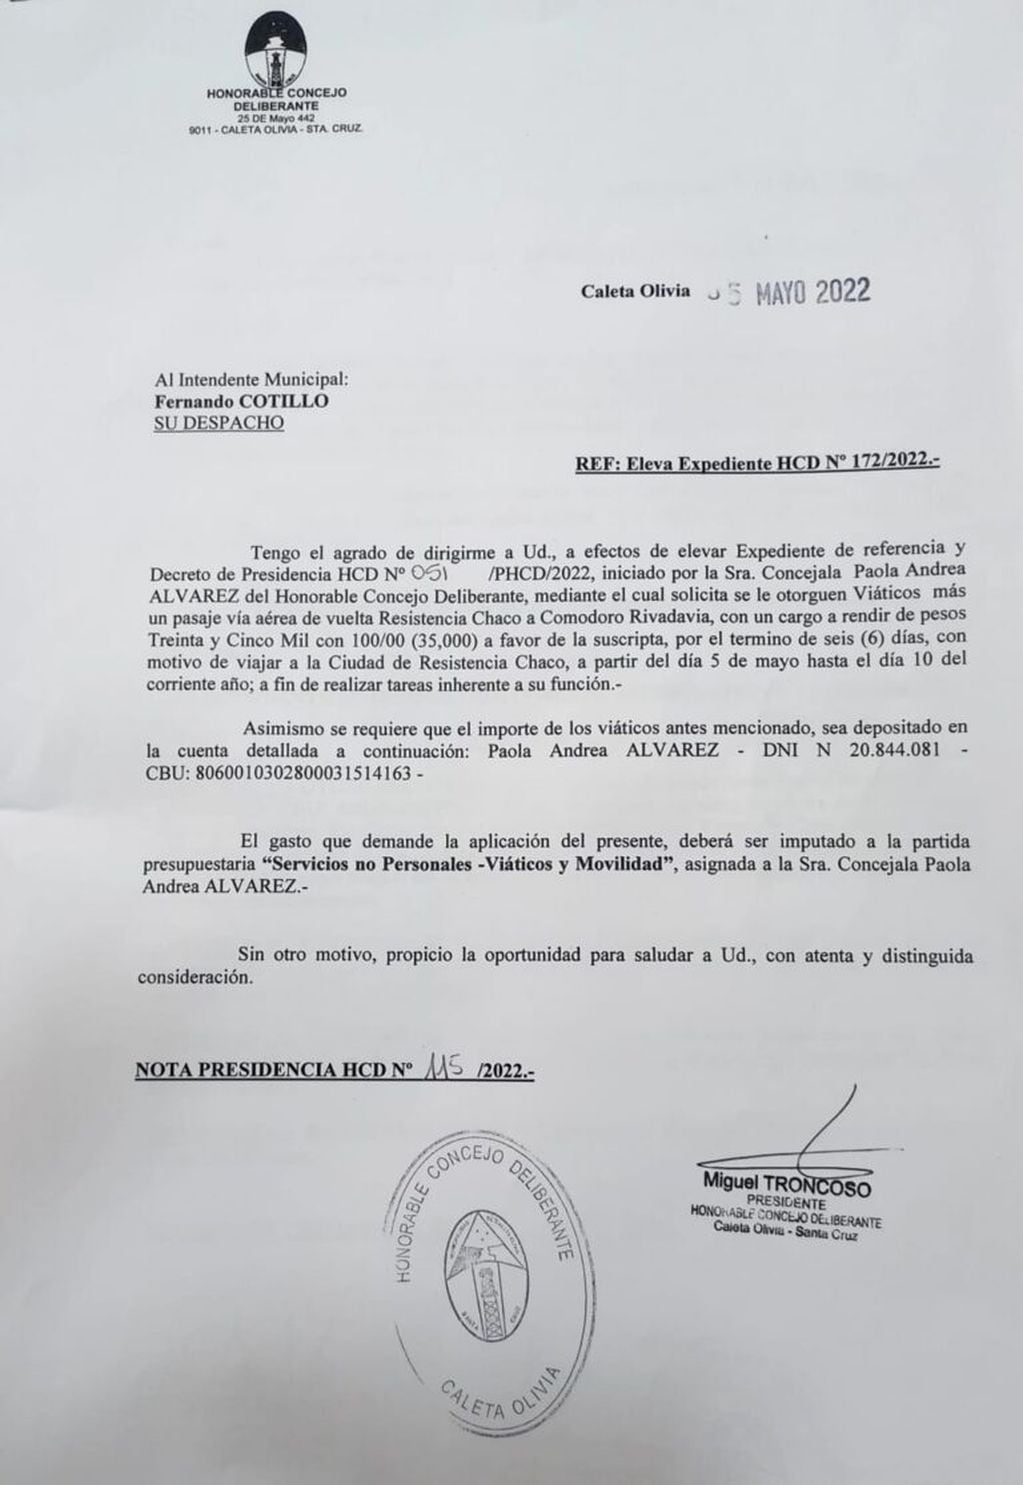 El pedido de la concejal peronista de viajar a Chaco con los fondos del pueblo.